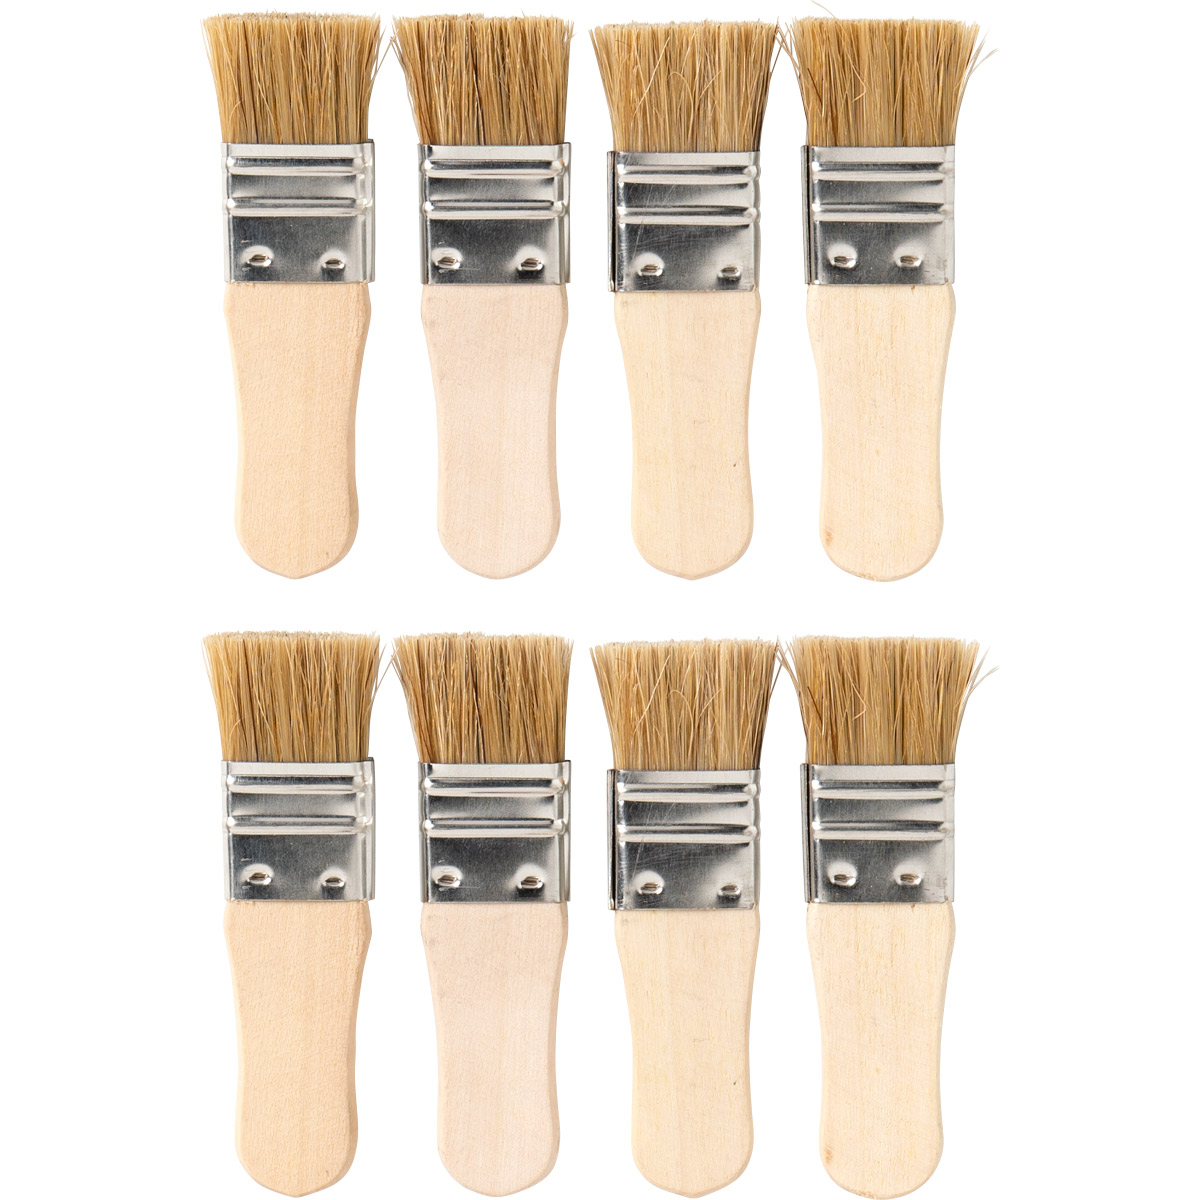 20Pcs Paint Brushes Small Short Handle Painting Brush Flat Mini